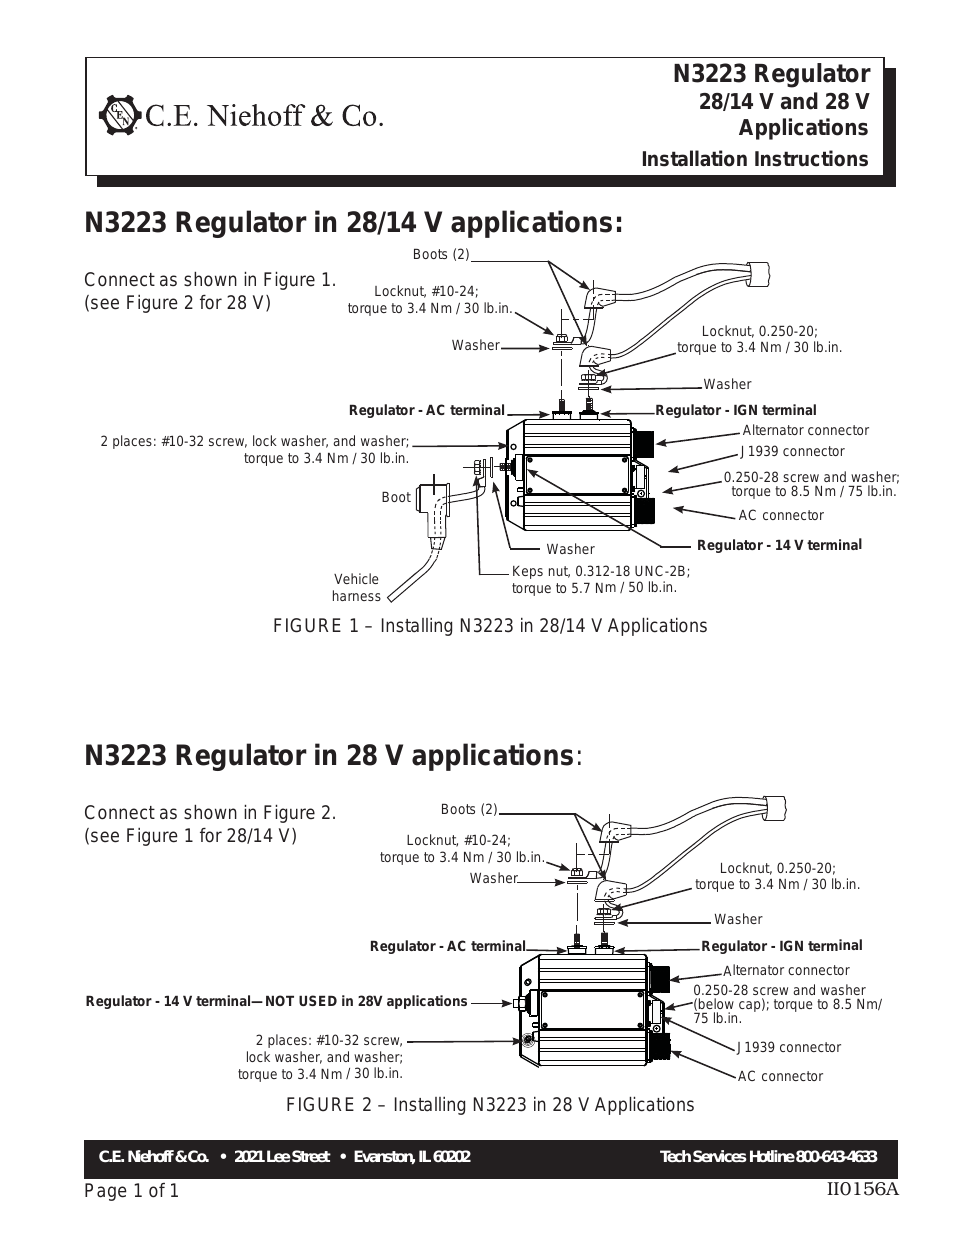 N3223 Regulator Installation